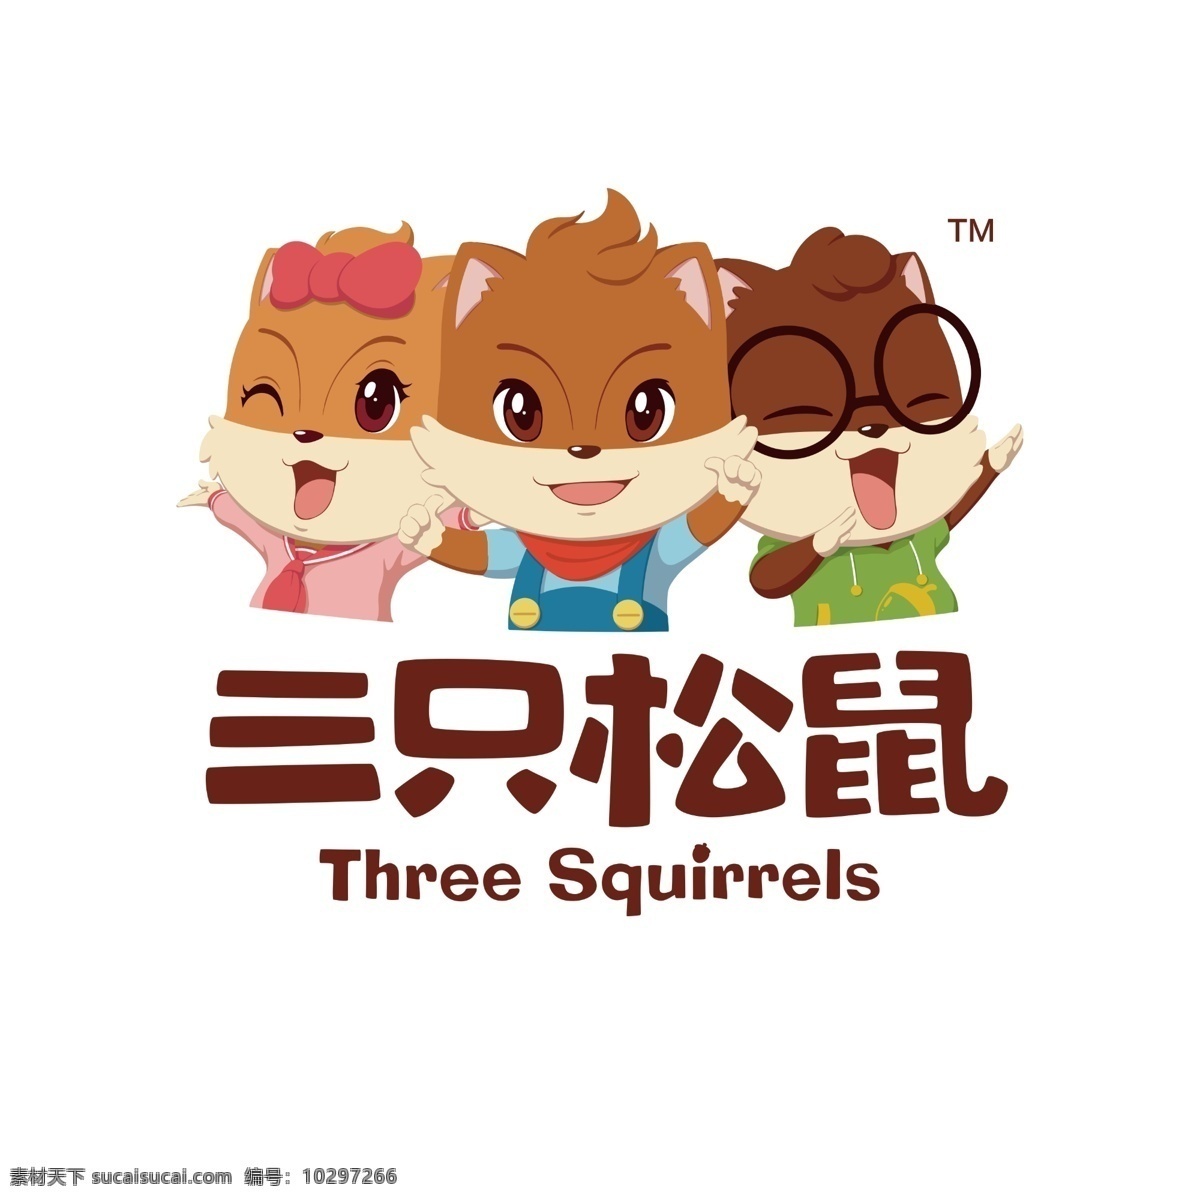 三只松鼠图片 三只松鼠 三只松鼠标志 三 只 松鼠 logo 三只松鼠标识 企业logo